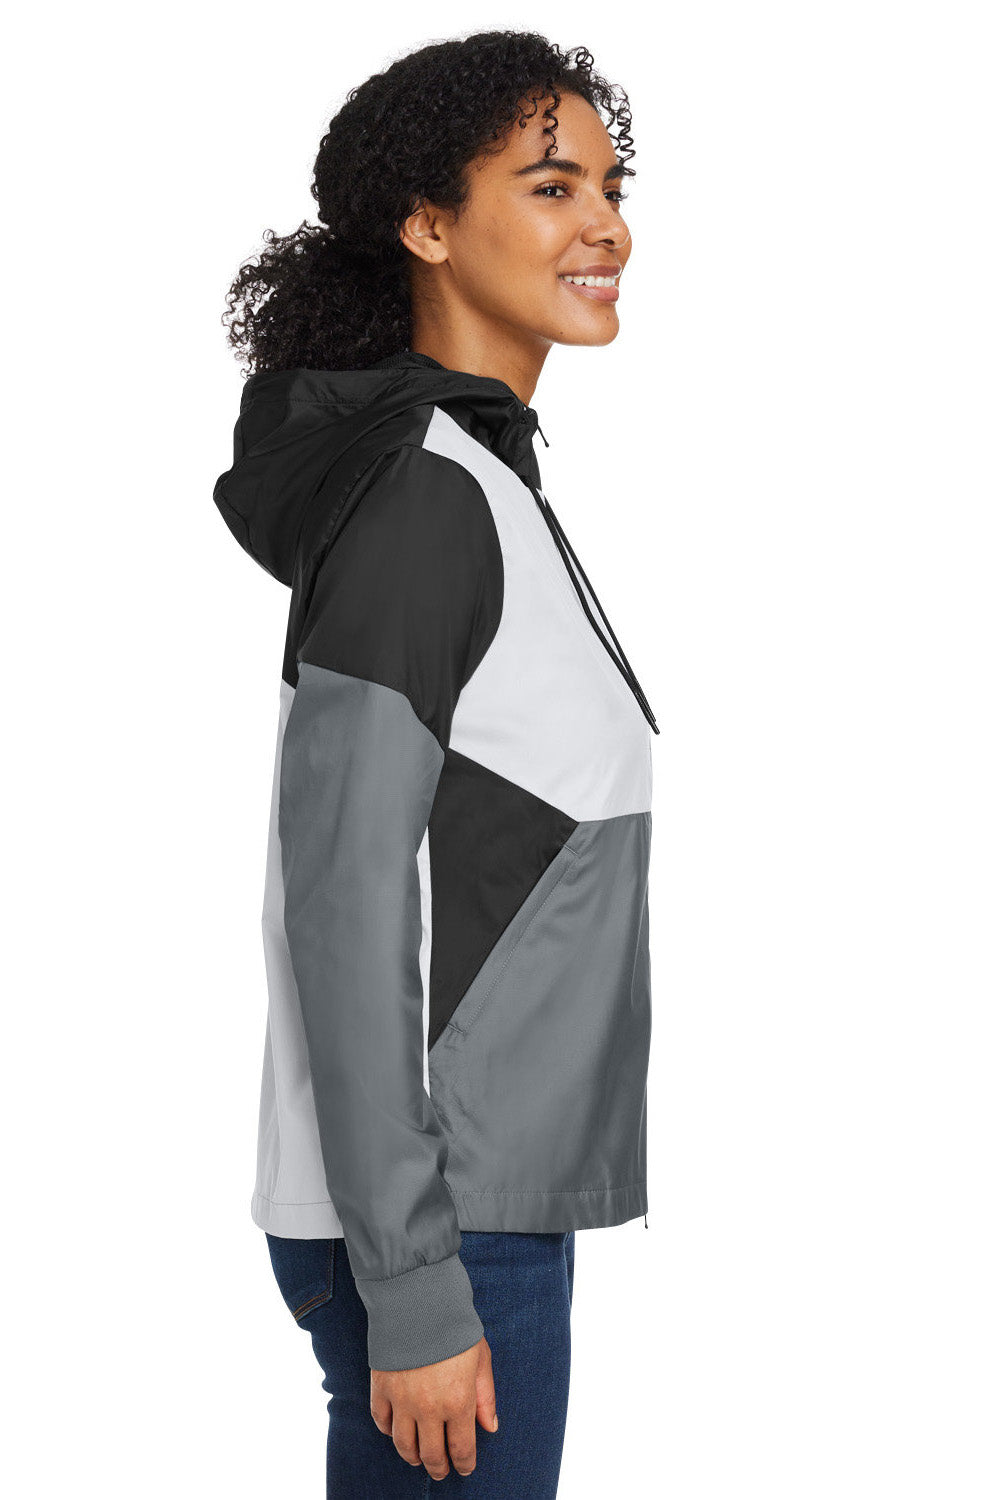 Under Armour 1359348 Womens Team Legacy Wind & Water Resistant Full Zip Hooded Jacket Black Model Side